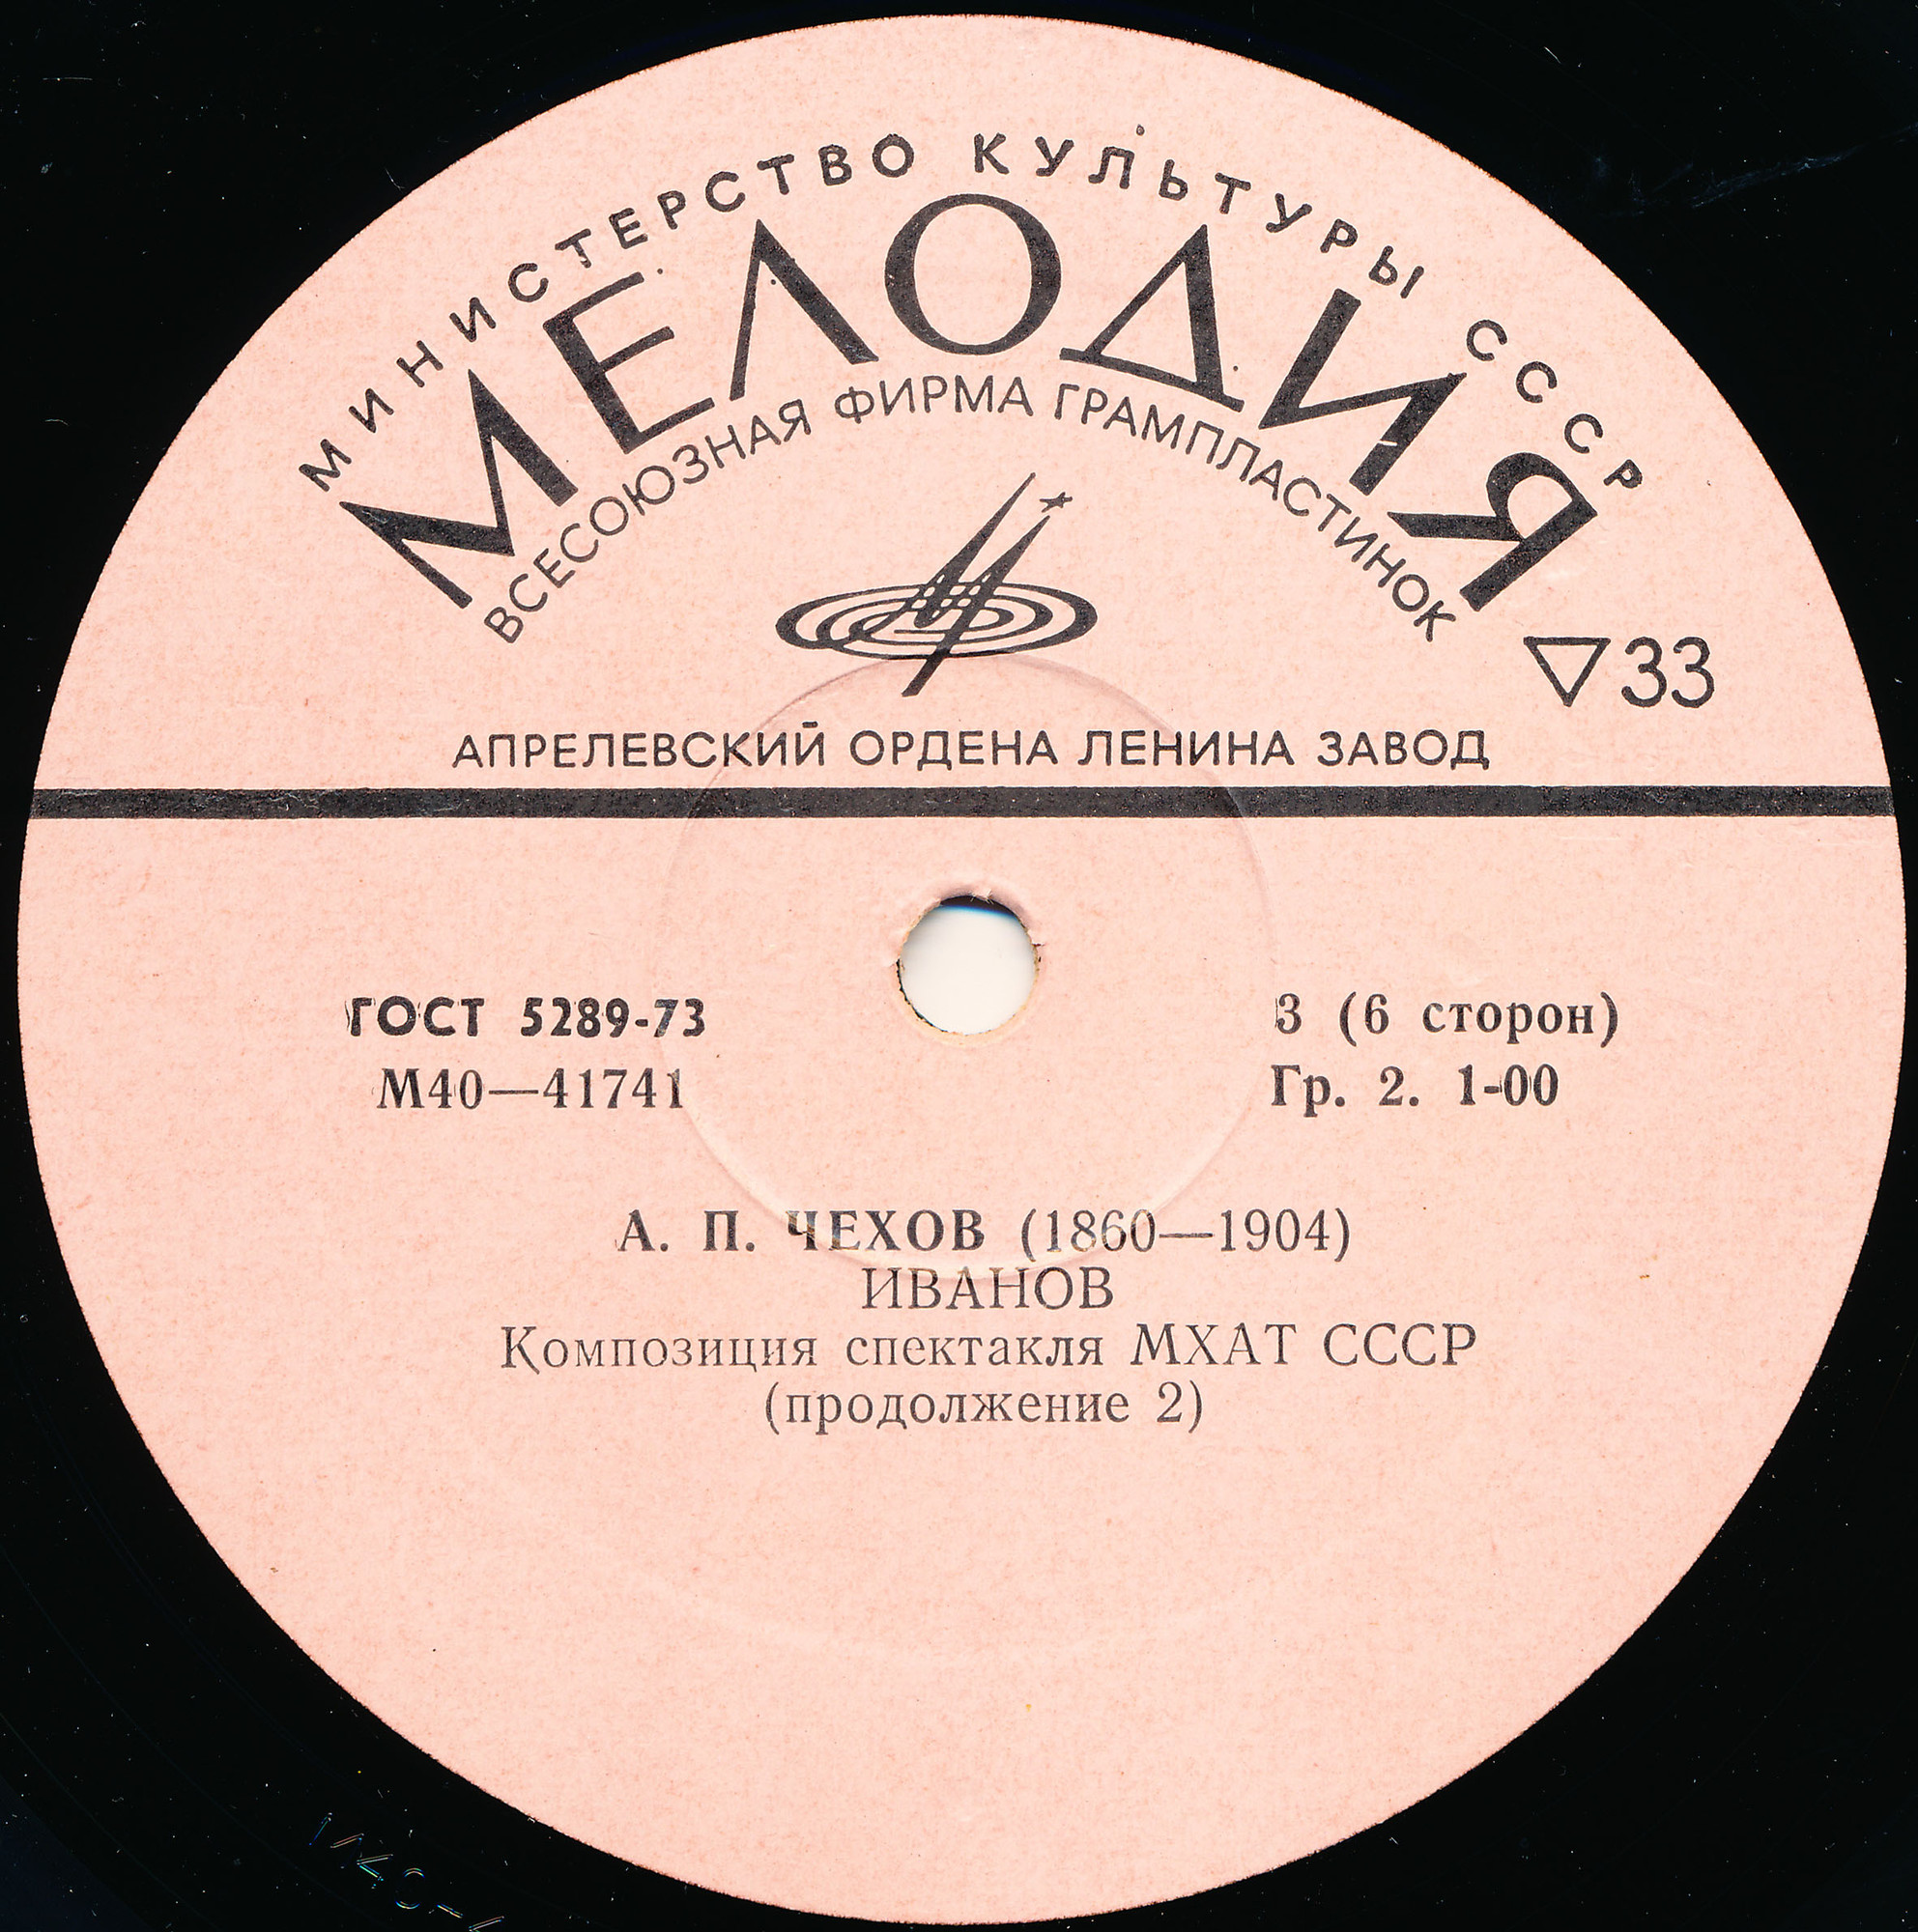 A. ЧЕХОВ (1860—1904): Иванов (композиция спектакля МХАТ СССР)